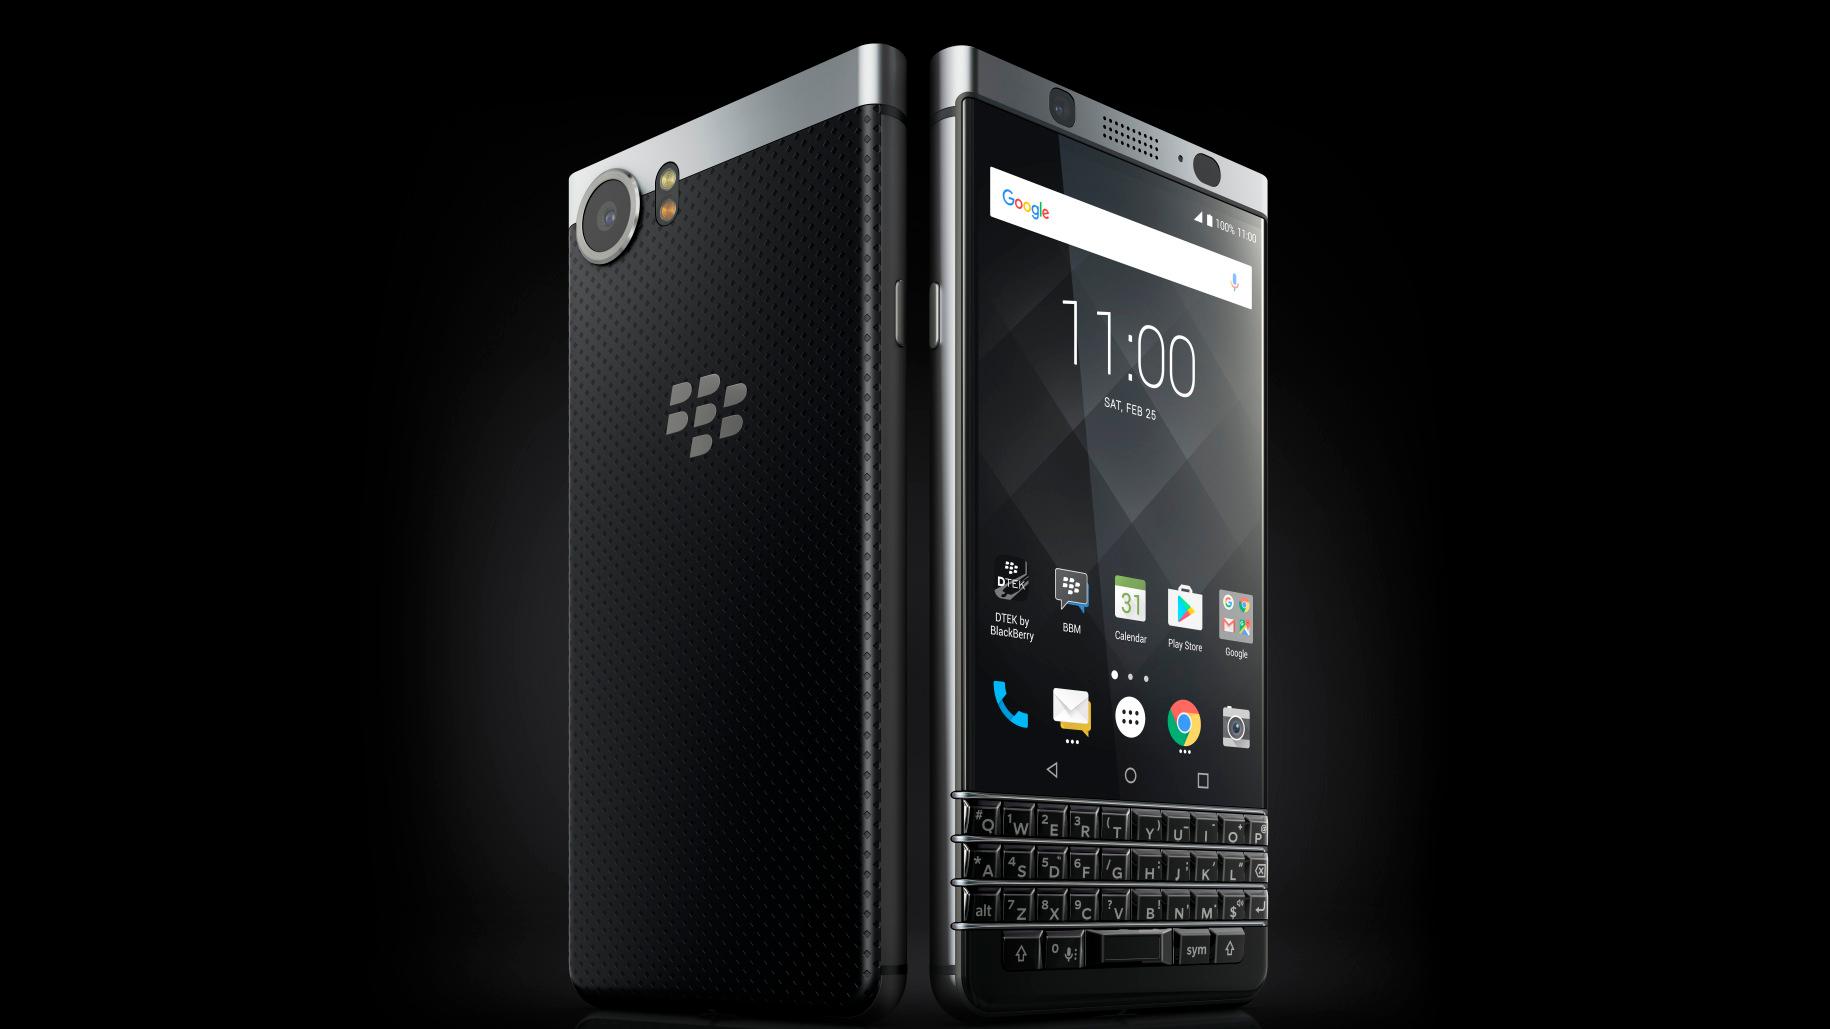 BlackBerry er ikke dødt ennå: Her er deres nye mobil med fysisk tastatur